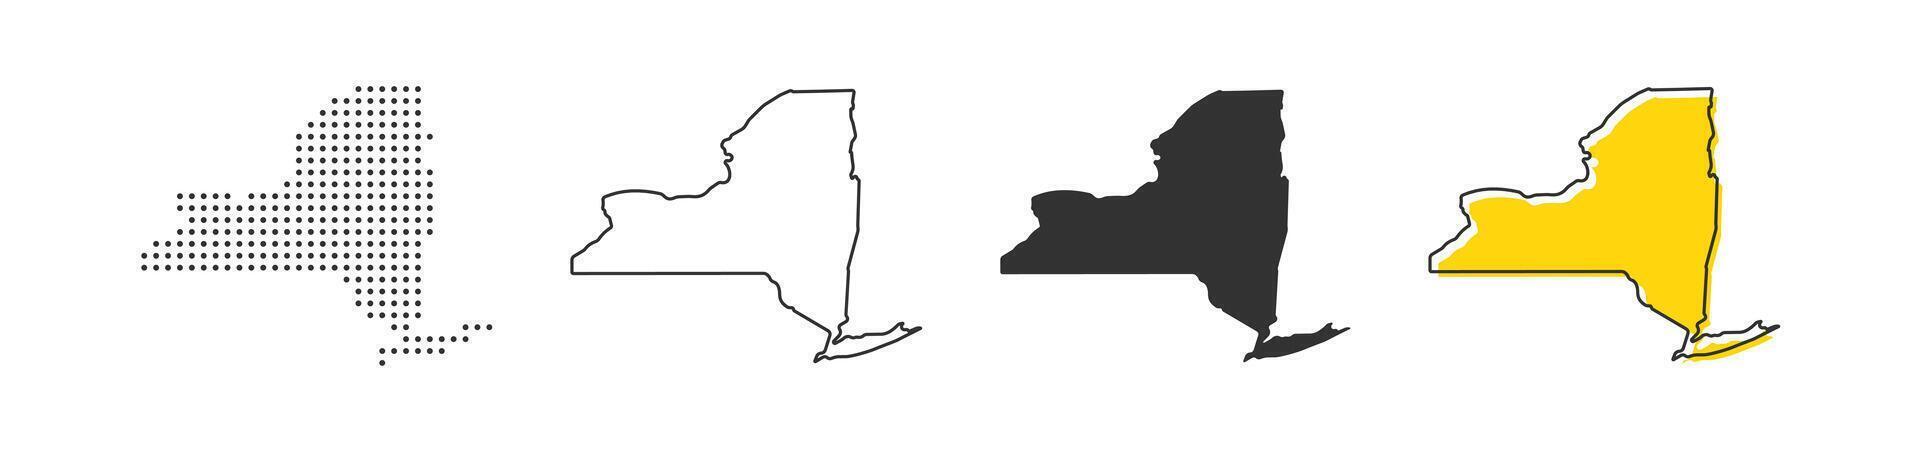 Novo Iorque Estado mapa do EUA país. geografia fronteira do americano cidade. vetor ilustração.